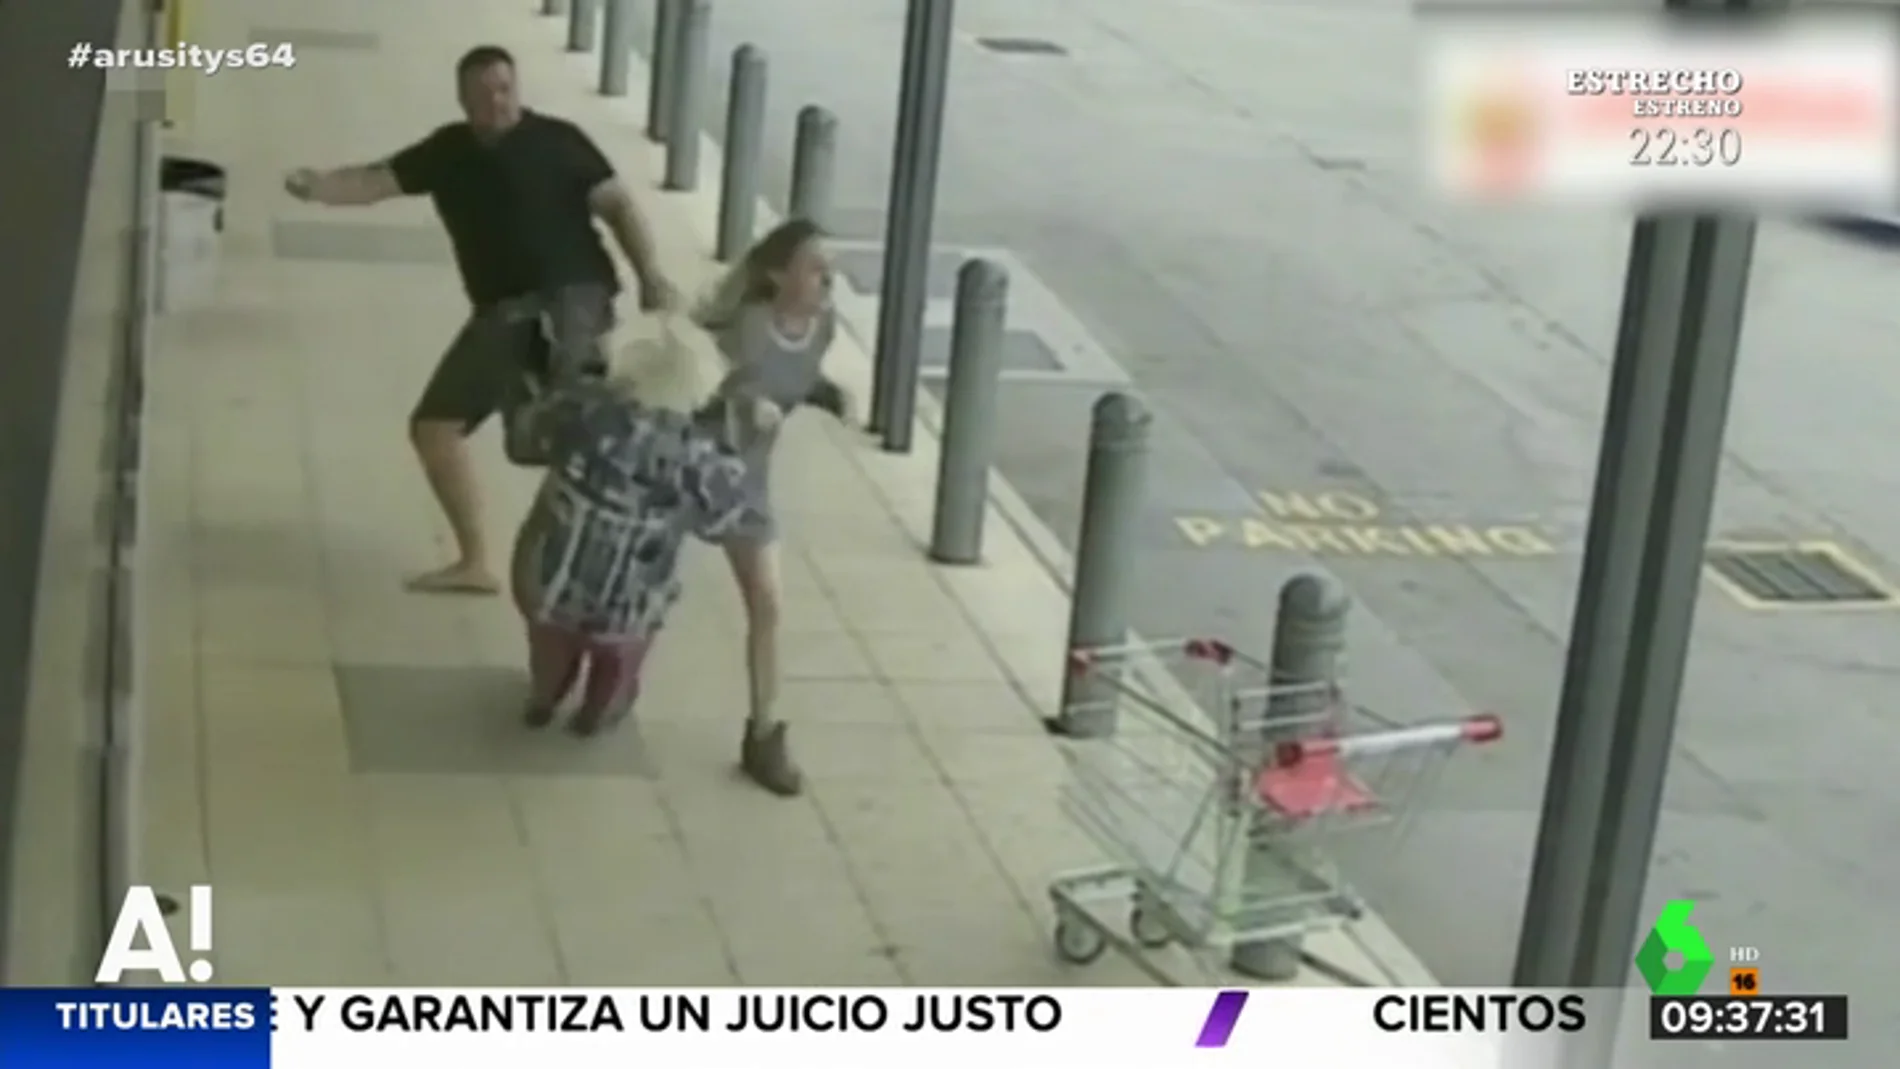 Una anciana cae al suelo después de que un esquizofrénico le diera un patada voladora a su nieta